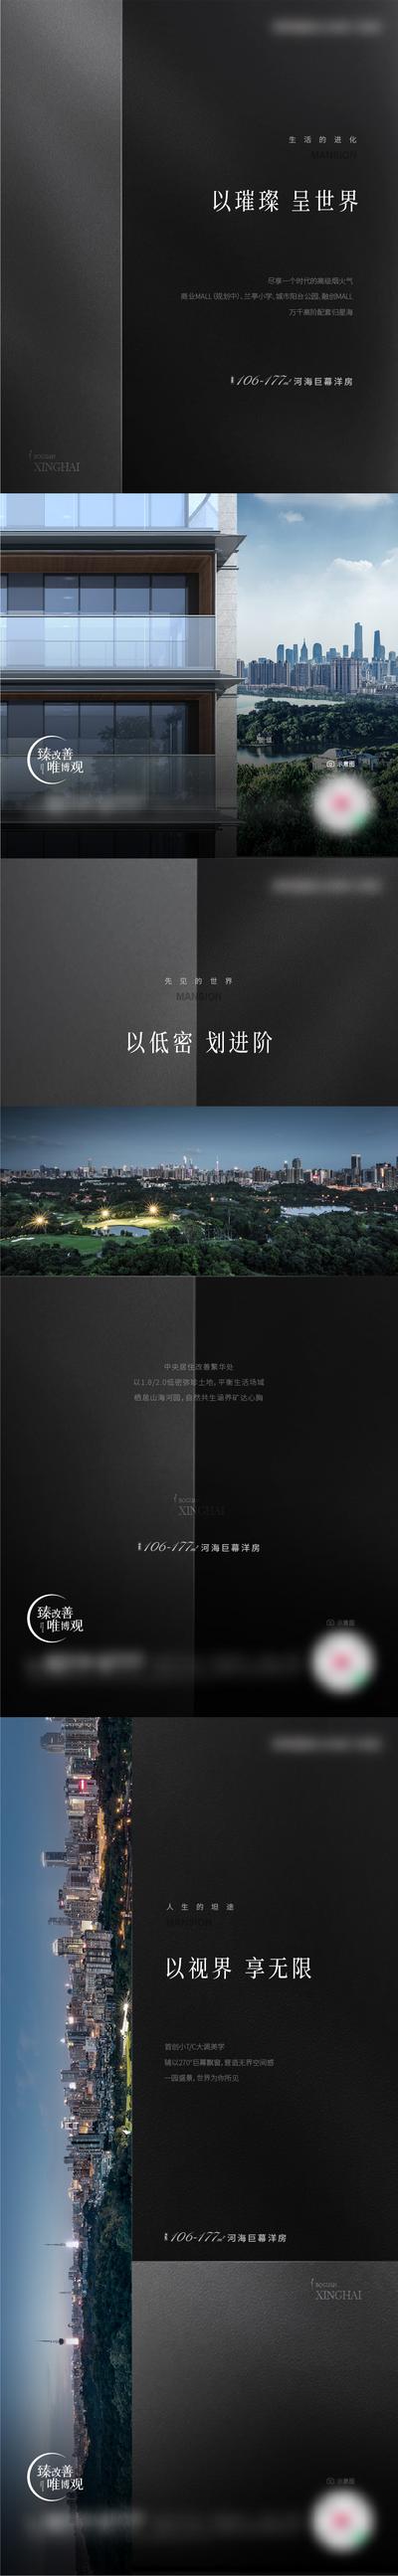 南门网 广告 海报 城市 价值点 单图 黑色 外立面 绿化 配套 低密 概念